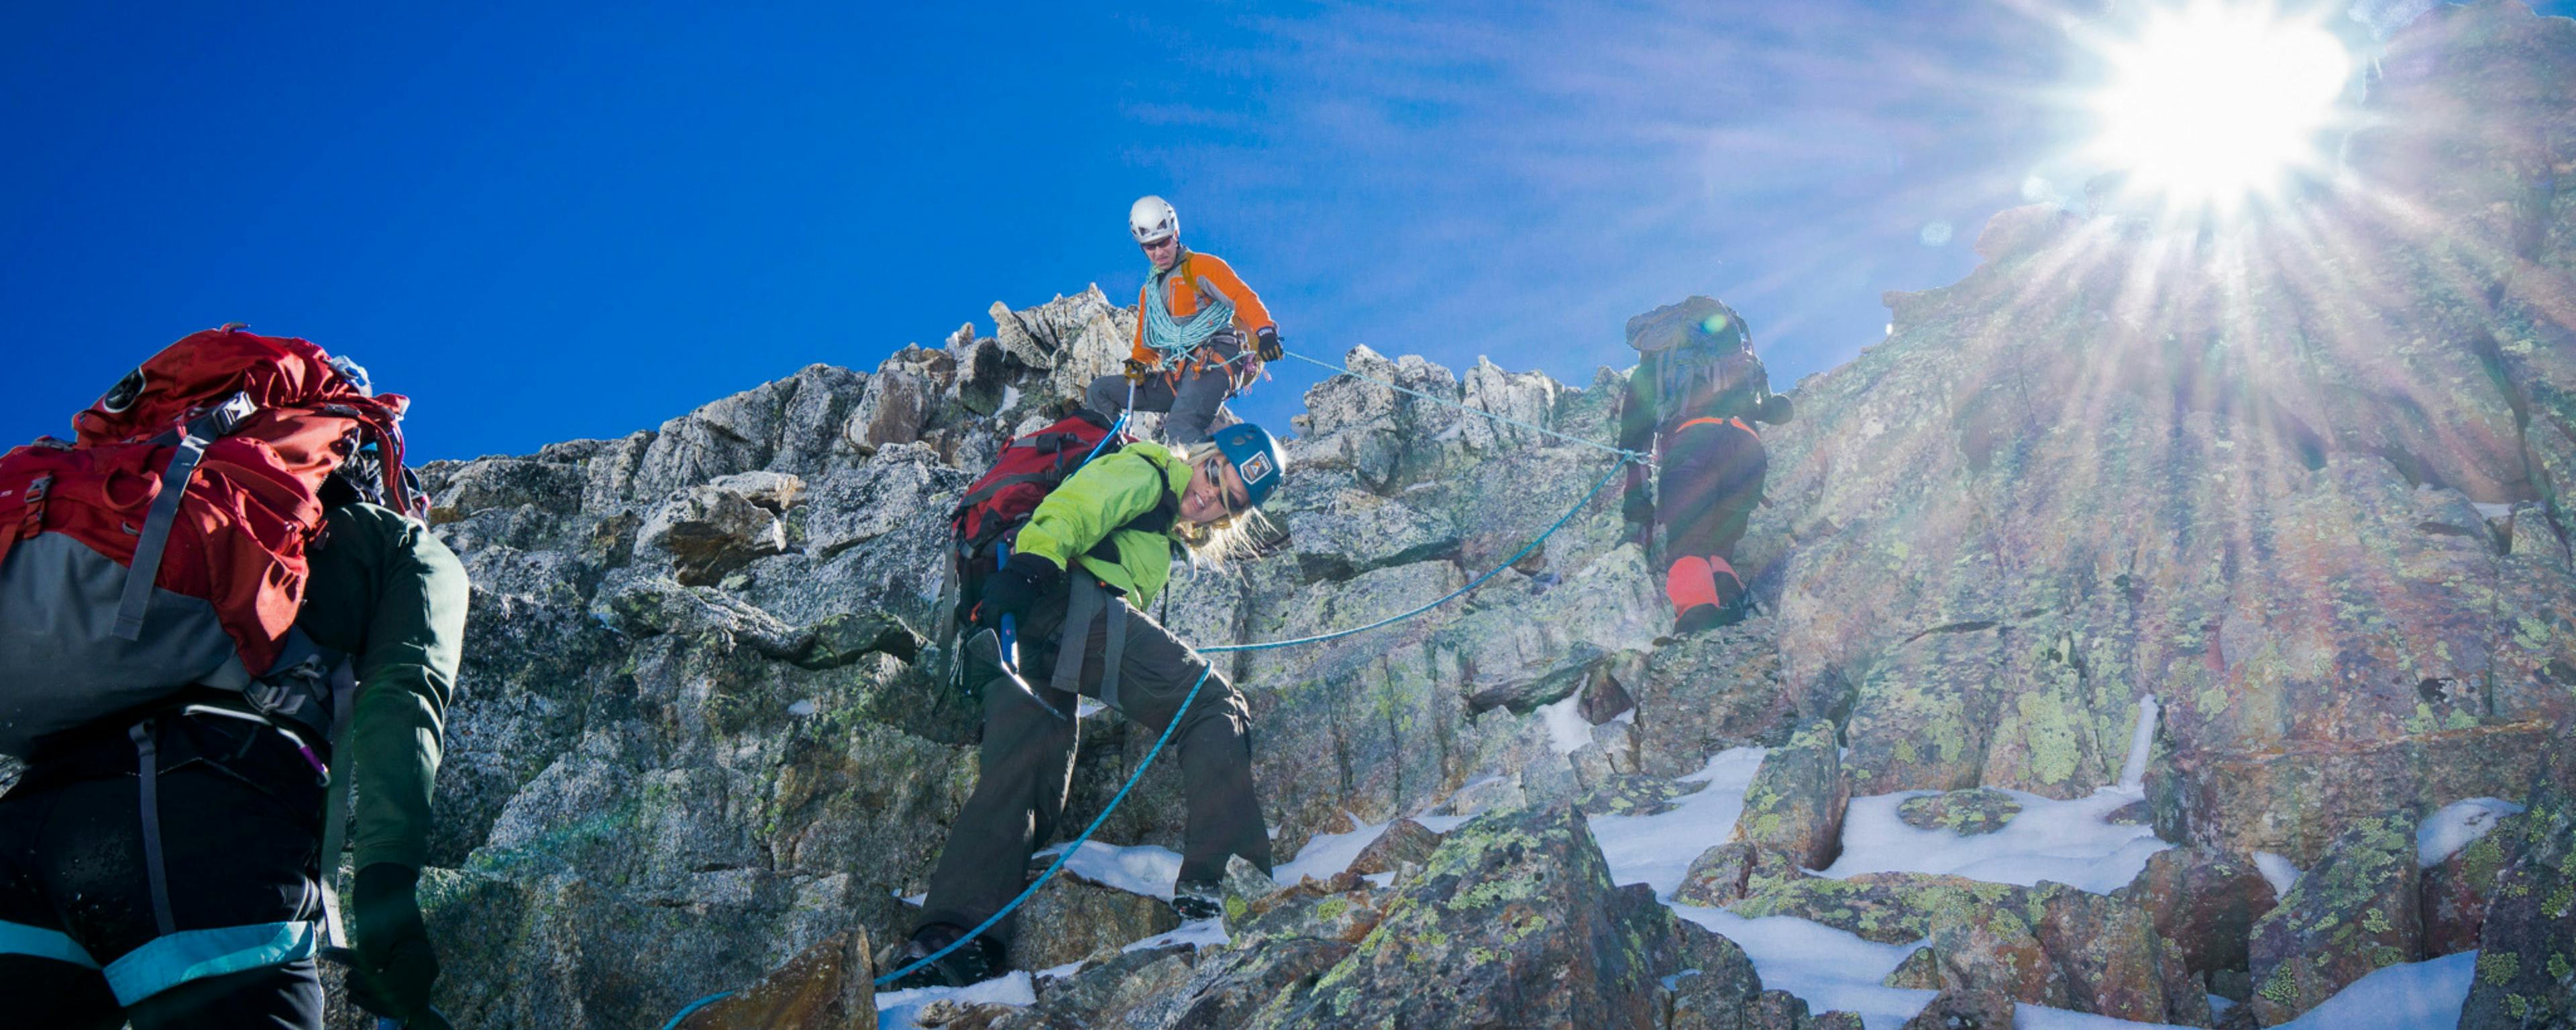 Association canadienne des guides de montagne